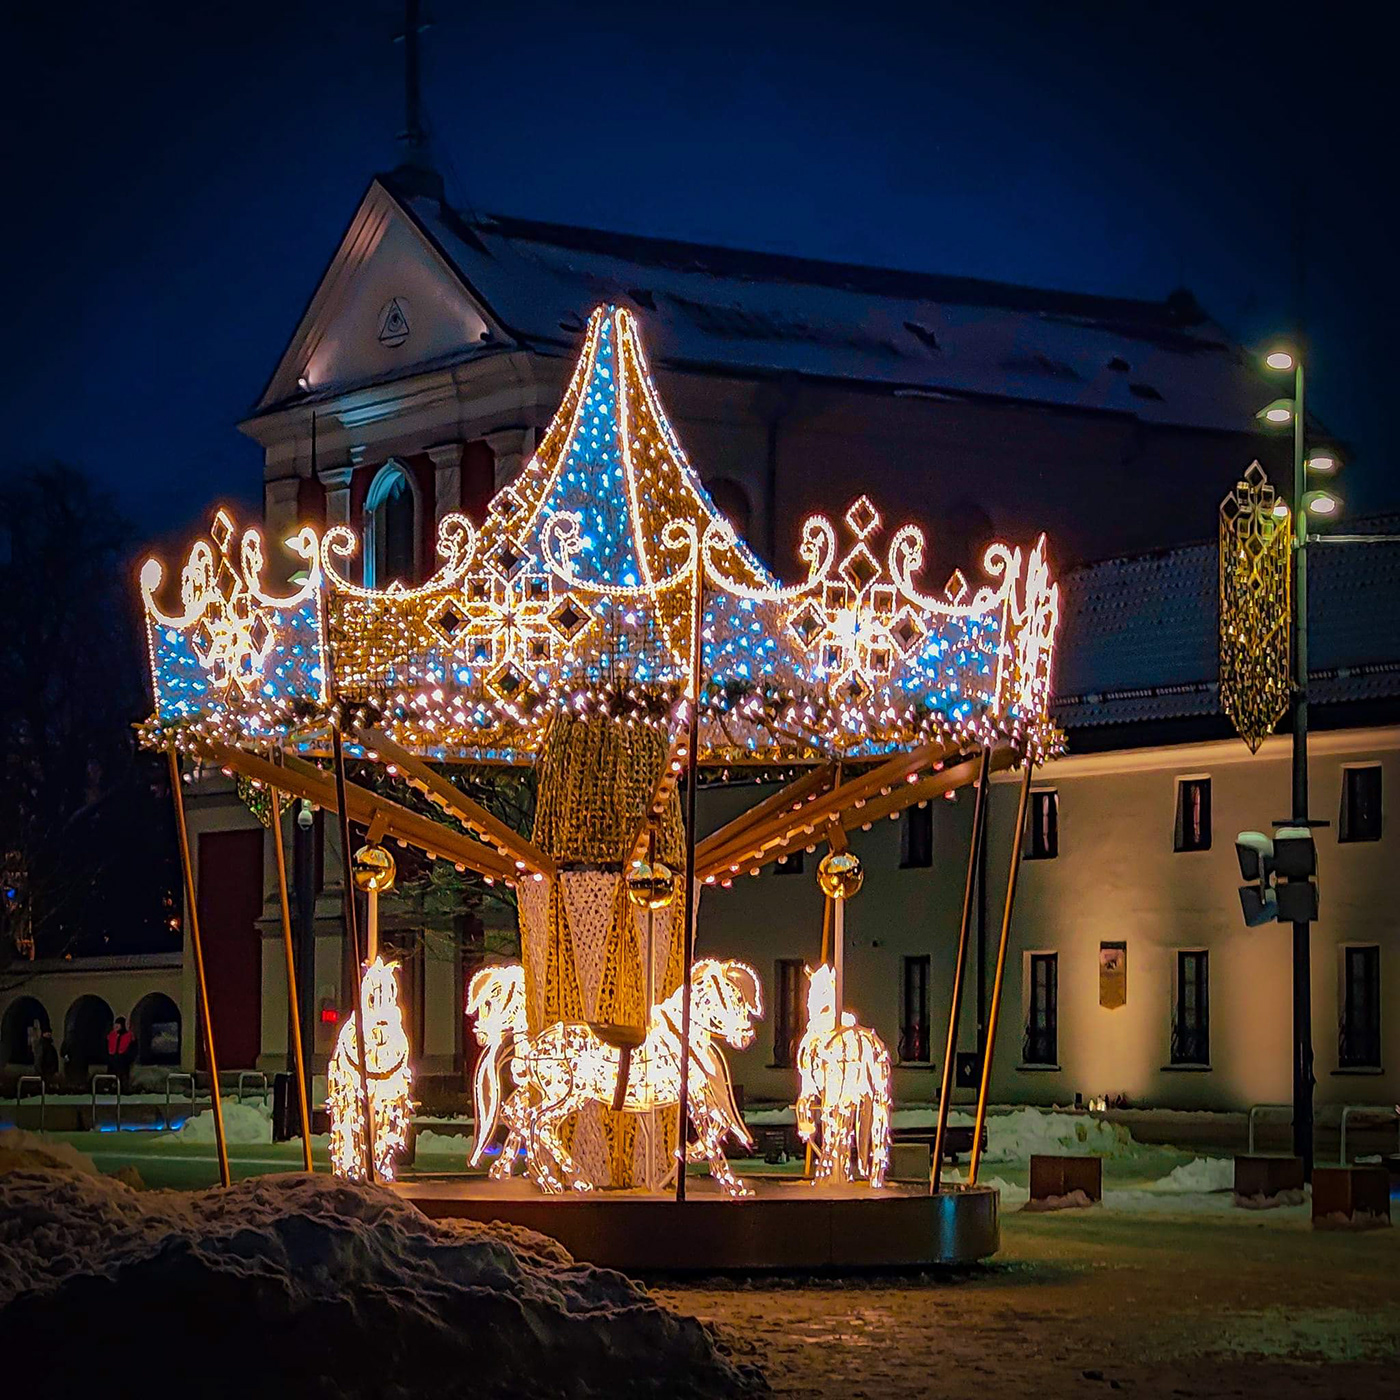 Christmas carousel świąteczna karuzela grzegorzpawlak.pl lublin